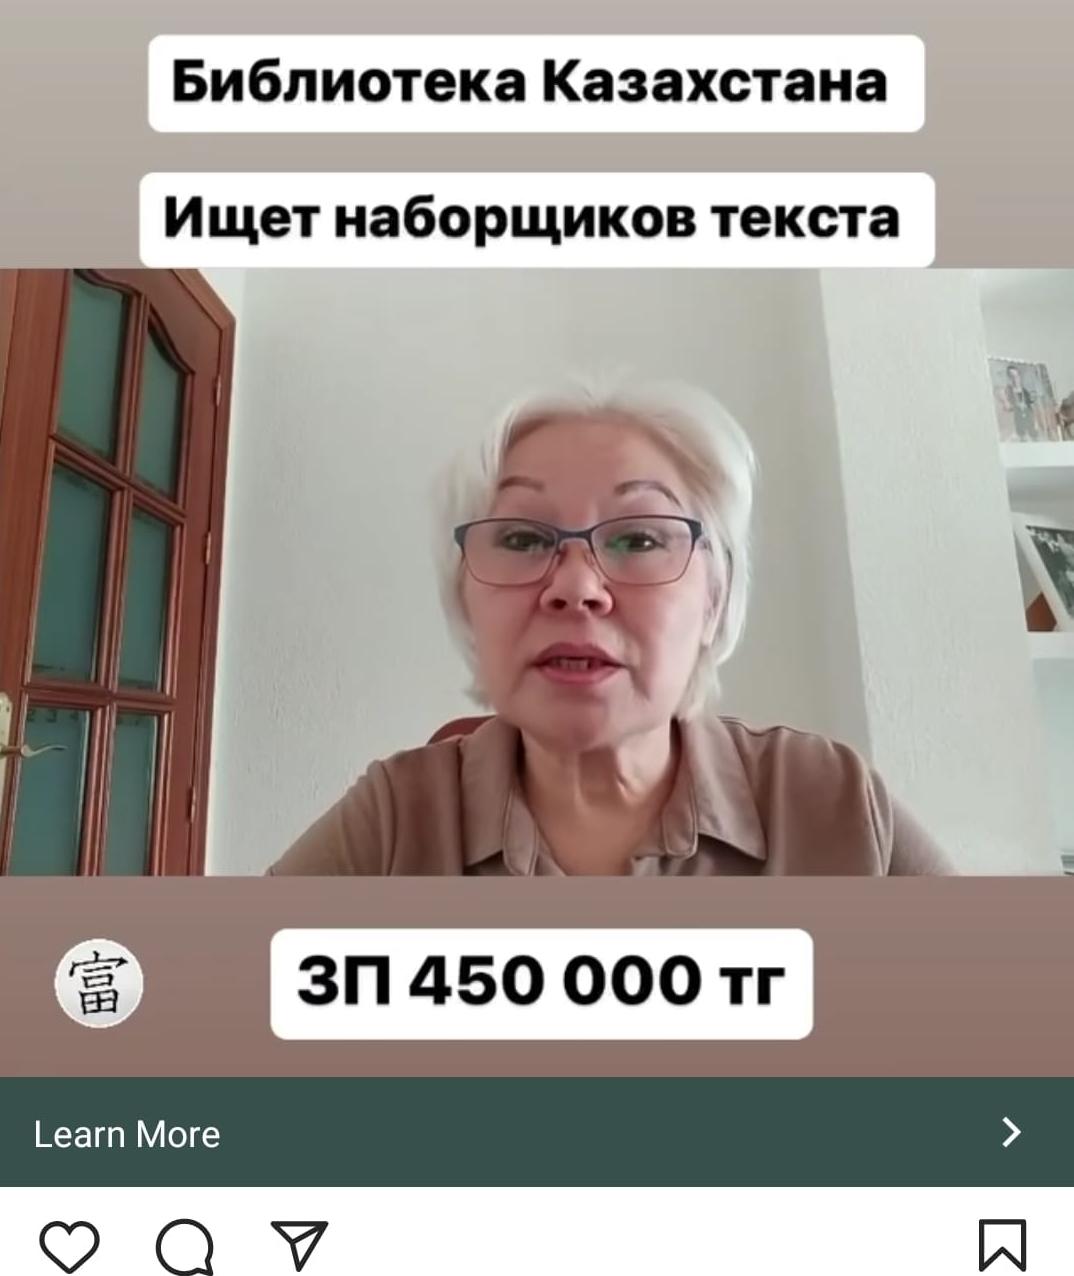 Несуществующая "Библиотека Казахстана" предлагает казахстанцам заработать от 30 тыс. тенге в день